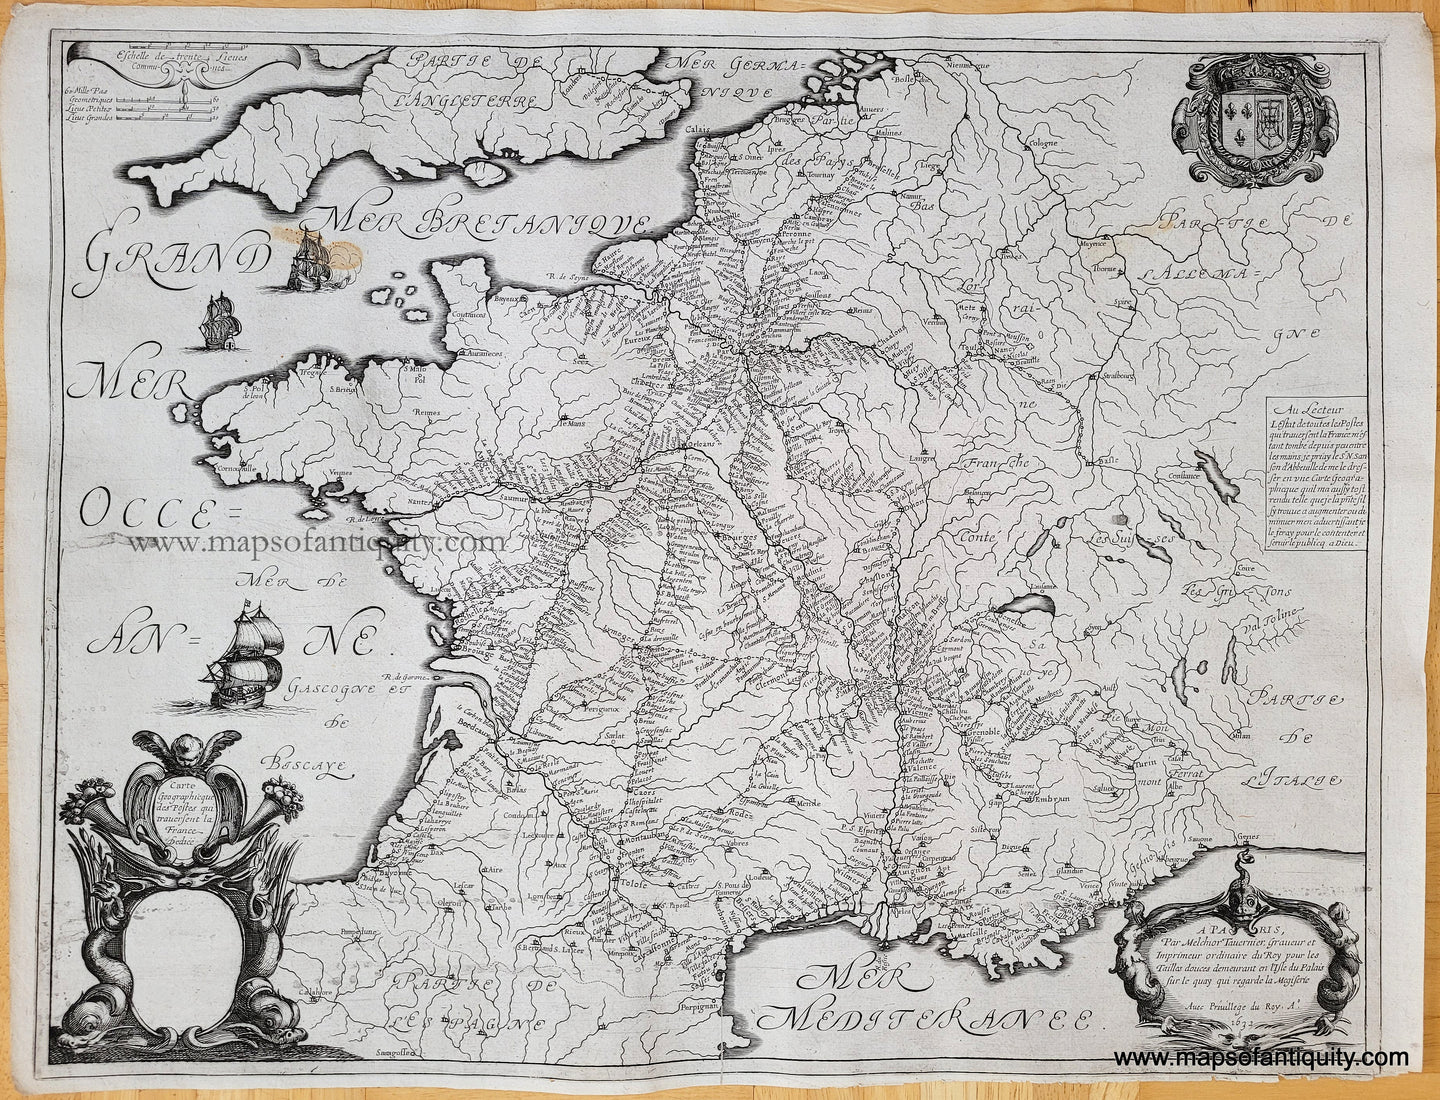 Genuine-Antique-Map-France-Postal-Routes-17th-century--Carte-Geographique-des-postes-qui-traversent-la-France-1630s-Hondius/Janssonius-Maps-Of-Antiquity